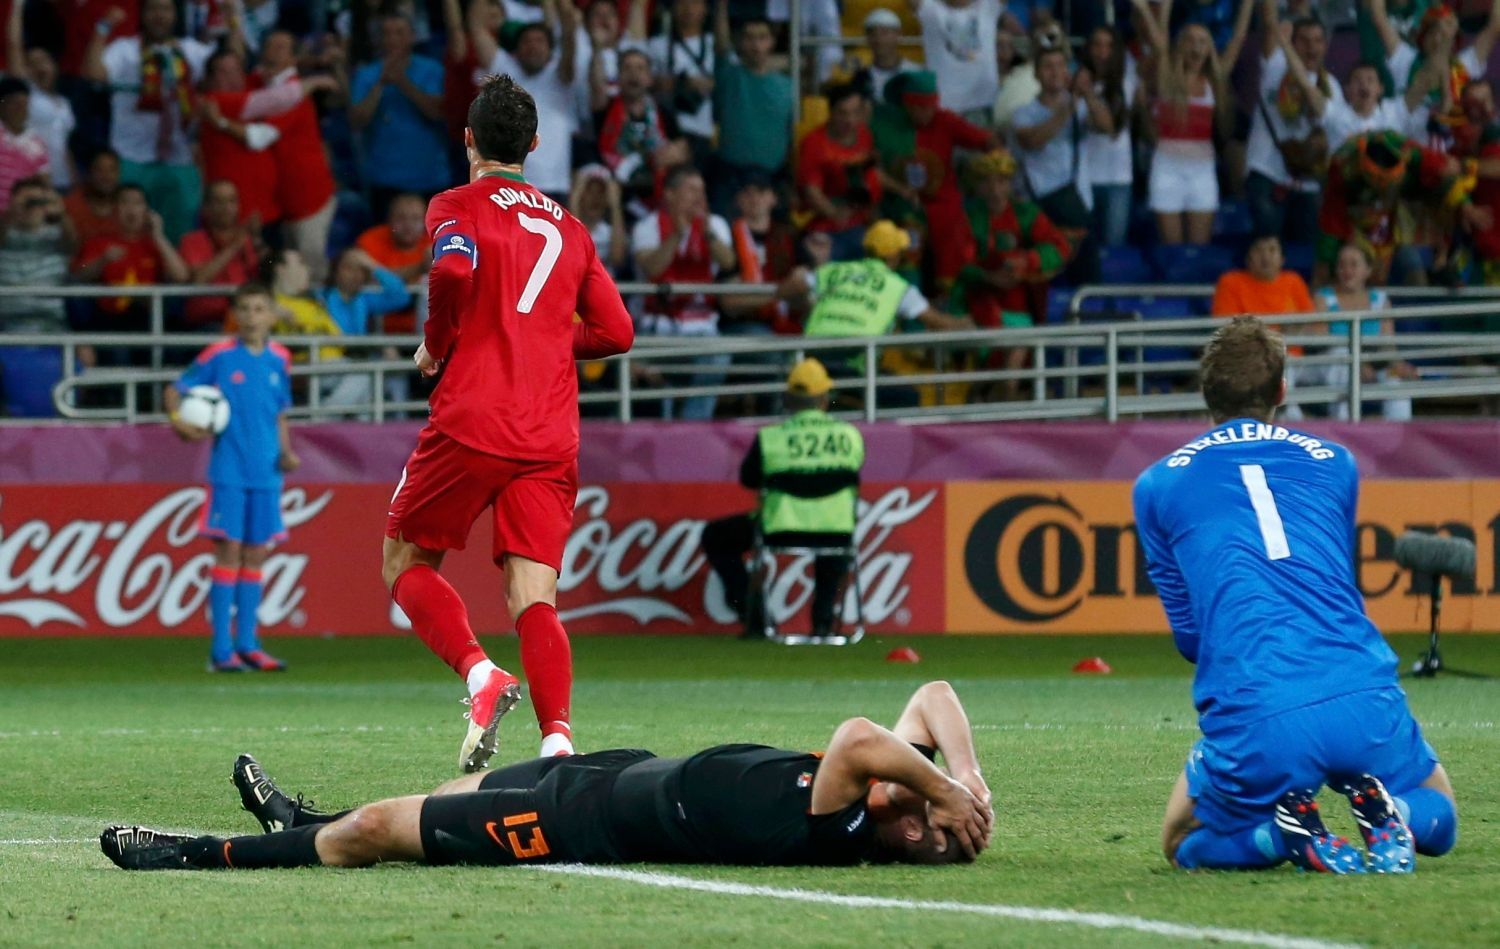 Holandský fotbalista Ron Vlaar sklesle leží po gólu odbíhajícího Portugalce Cristiana Ronalda a vedle něj klečí brankář Maarten Stekelenburg v utkání skupiny B na Euru 2012